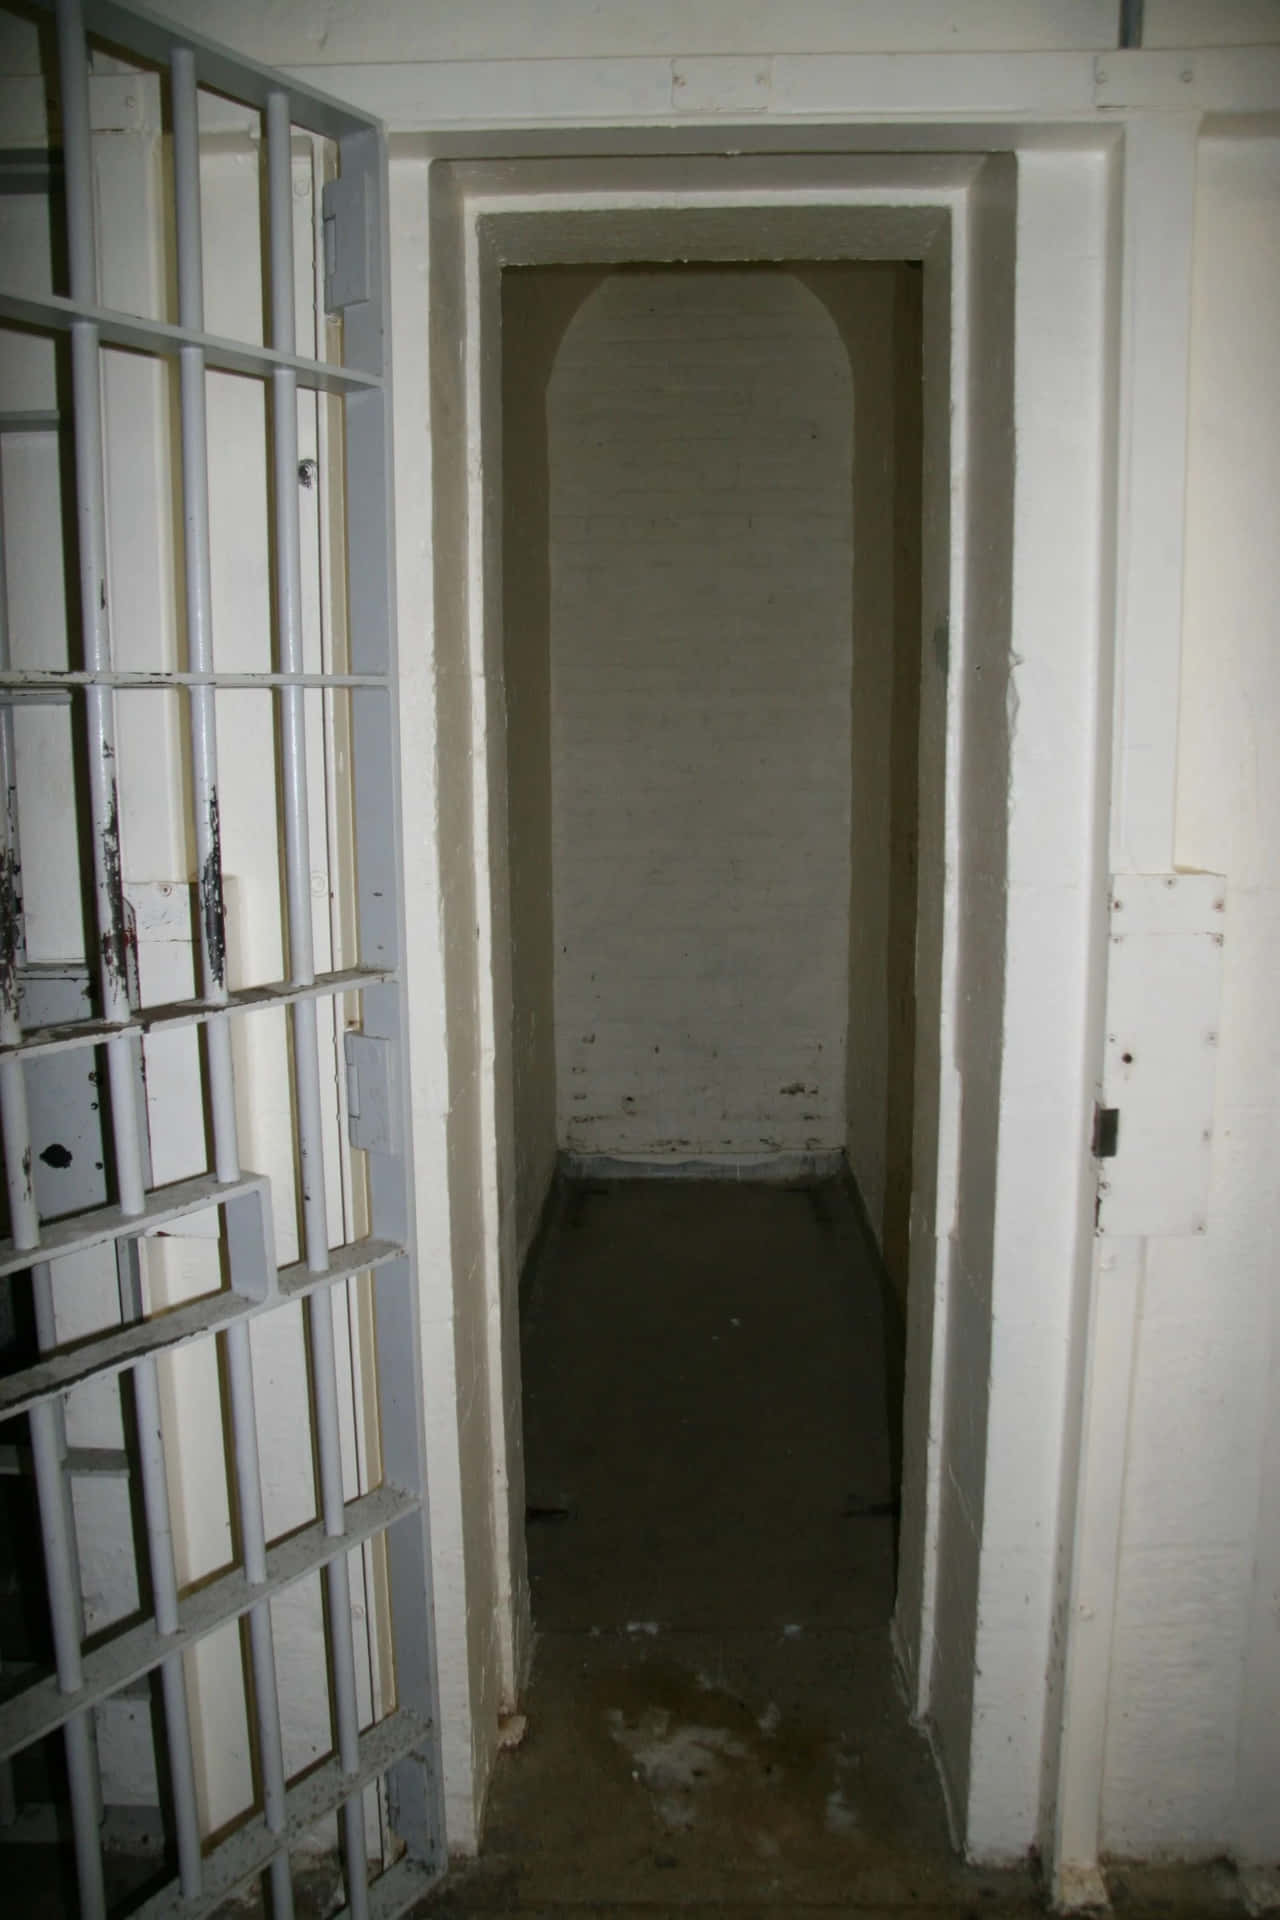 Uningresso In Una Cella Di Prigione